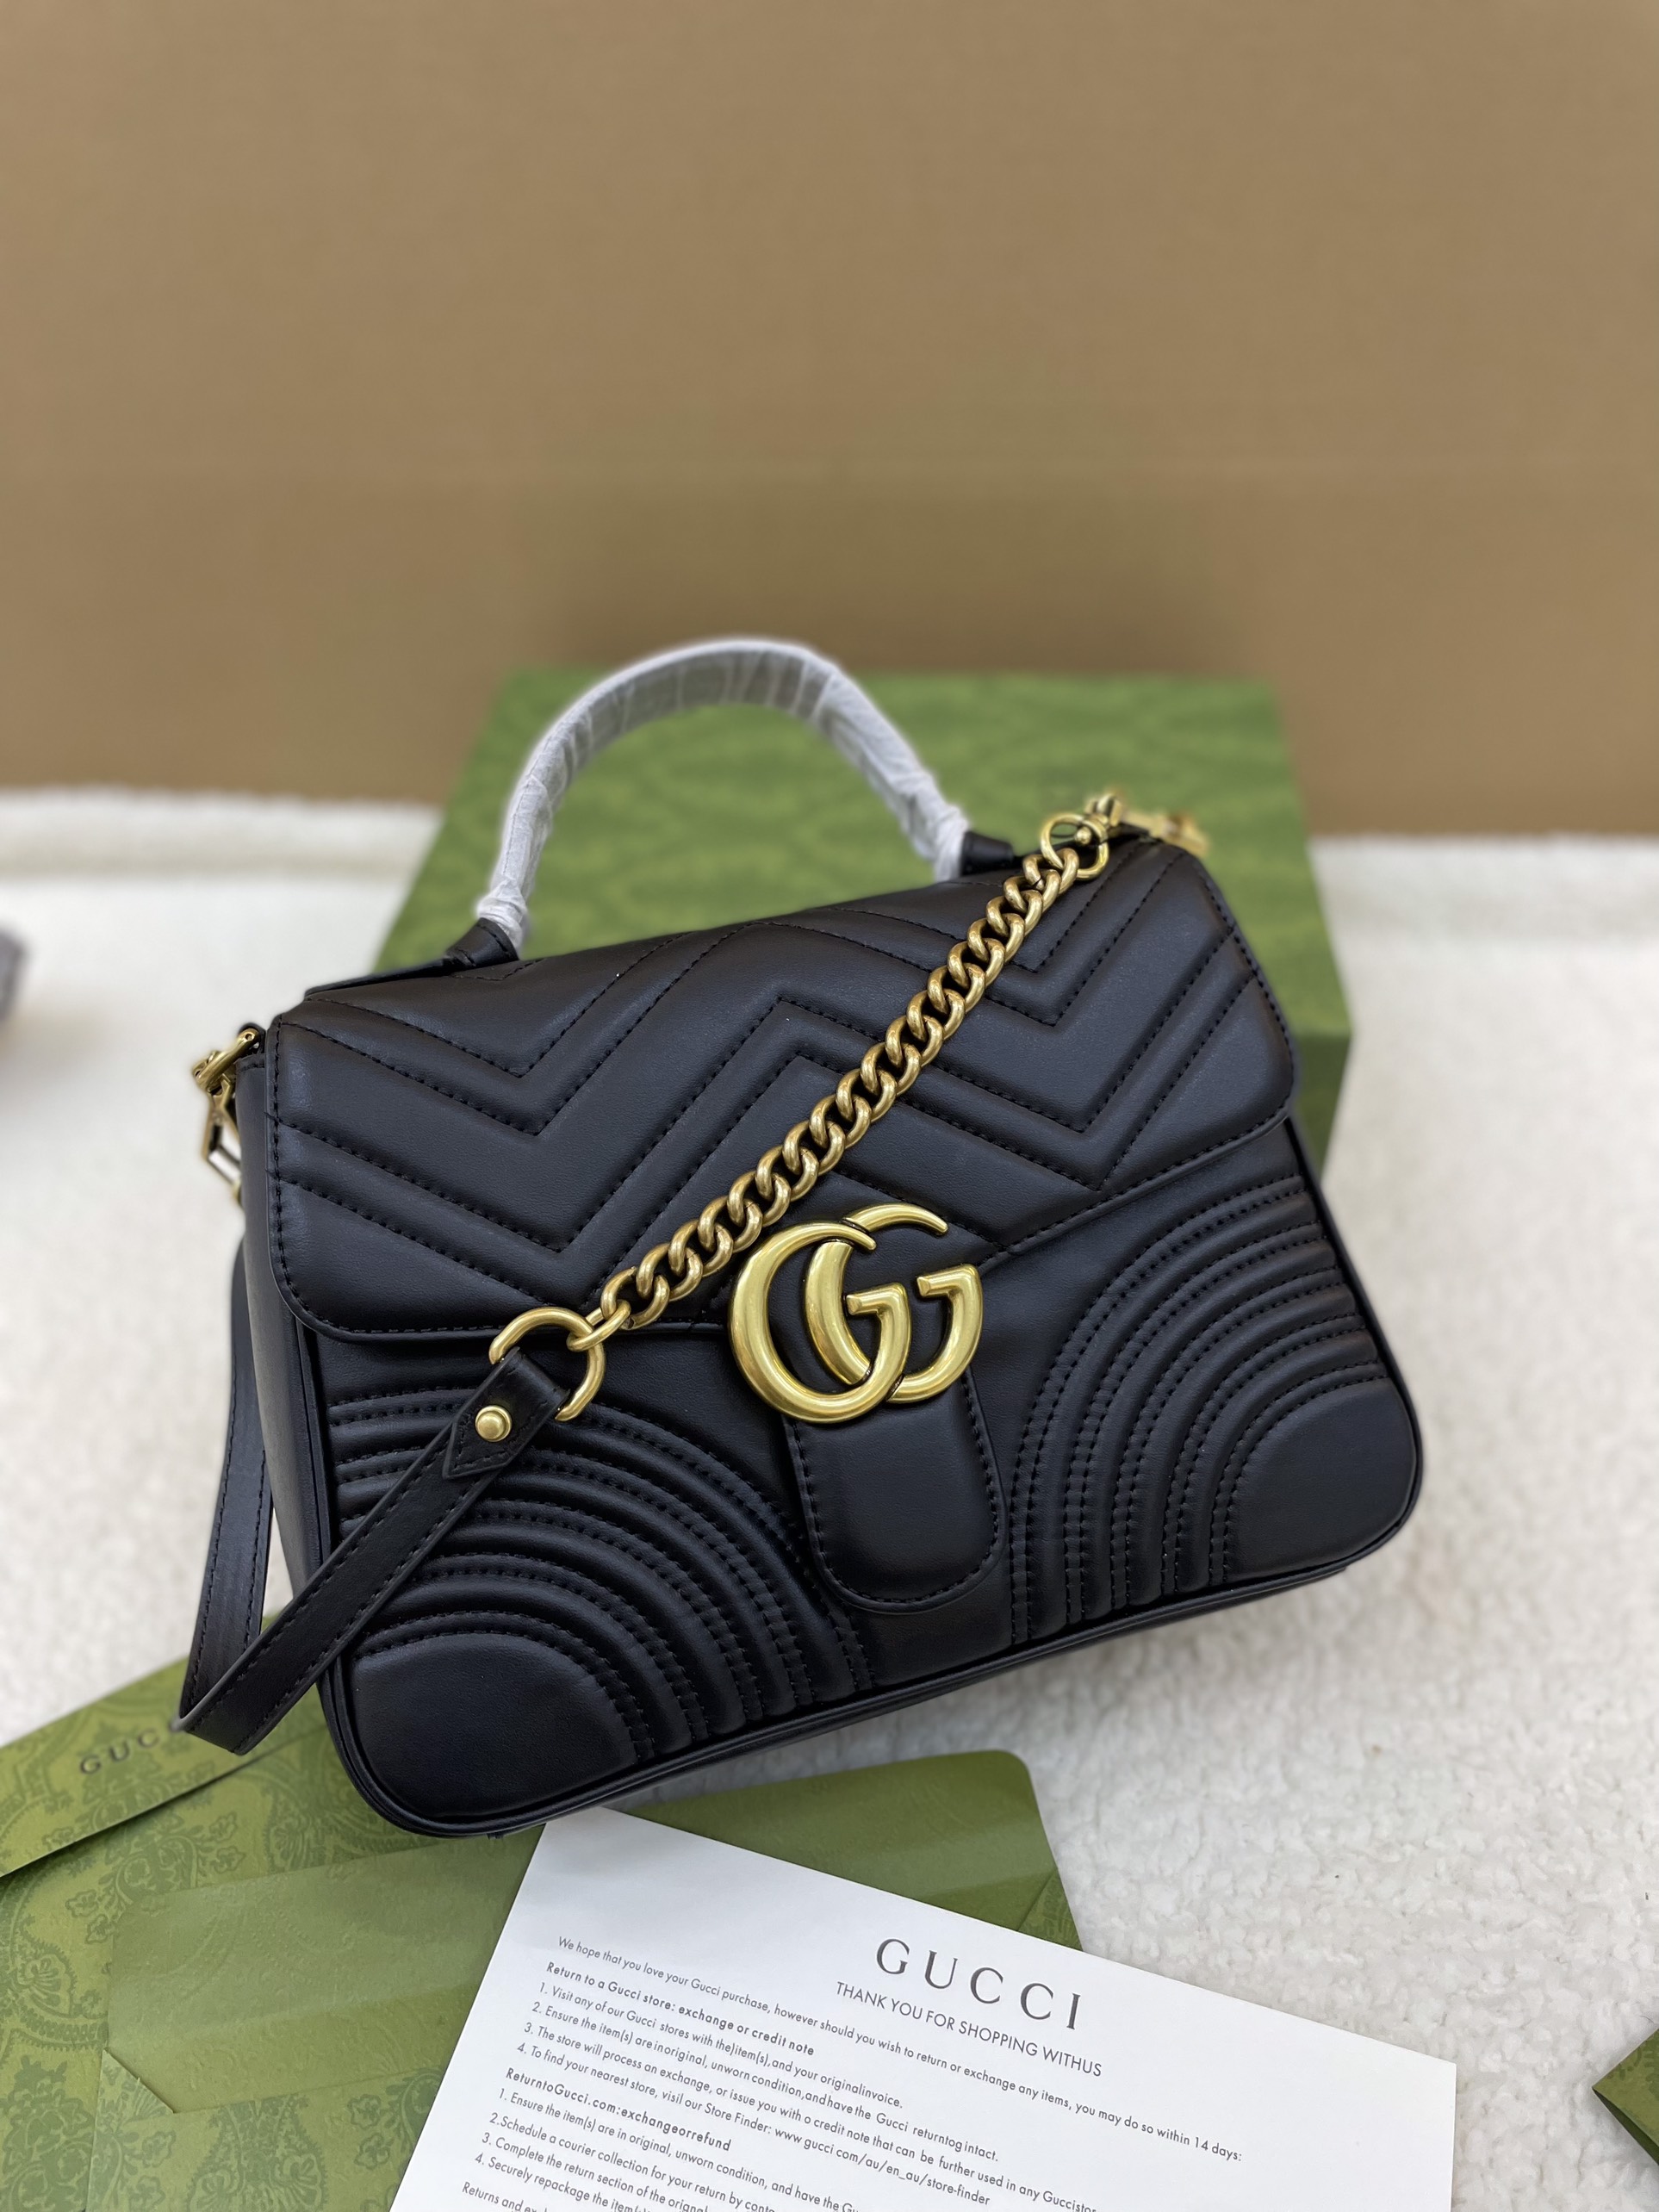 Túi Xách Gucci Marmont Tophandle Super Màu Đen SIze 28cm Full Box